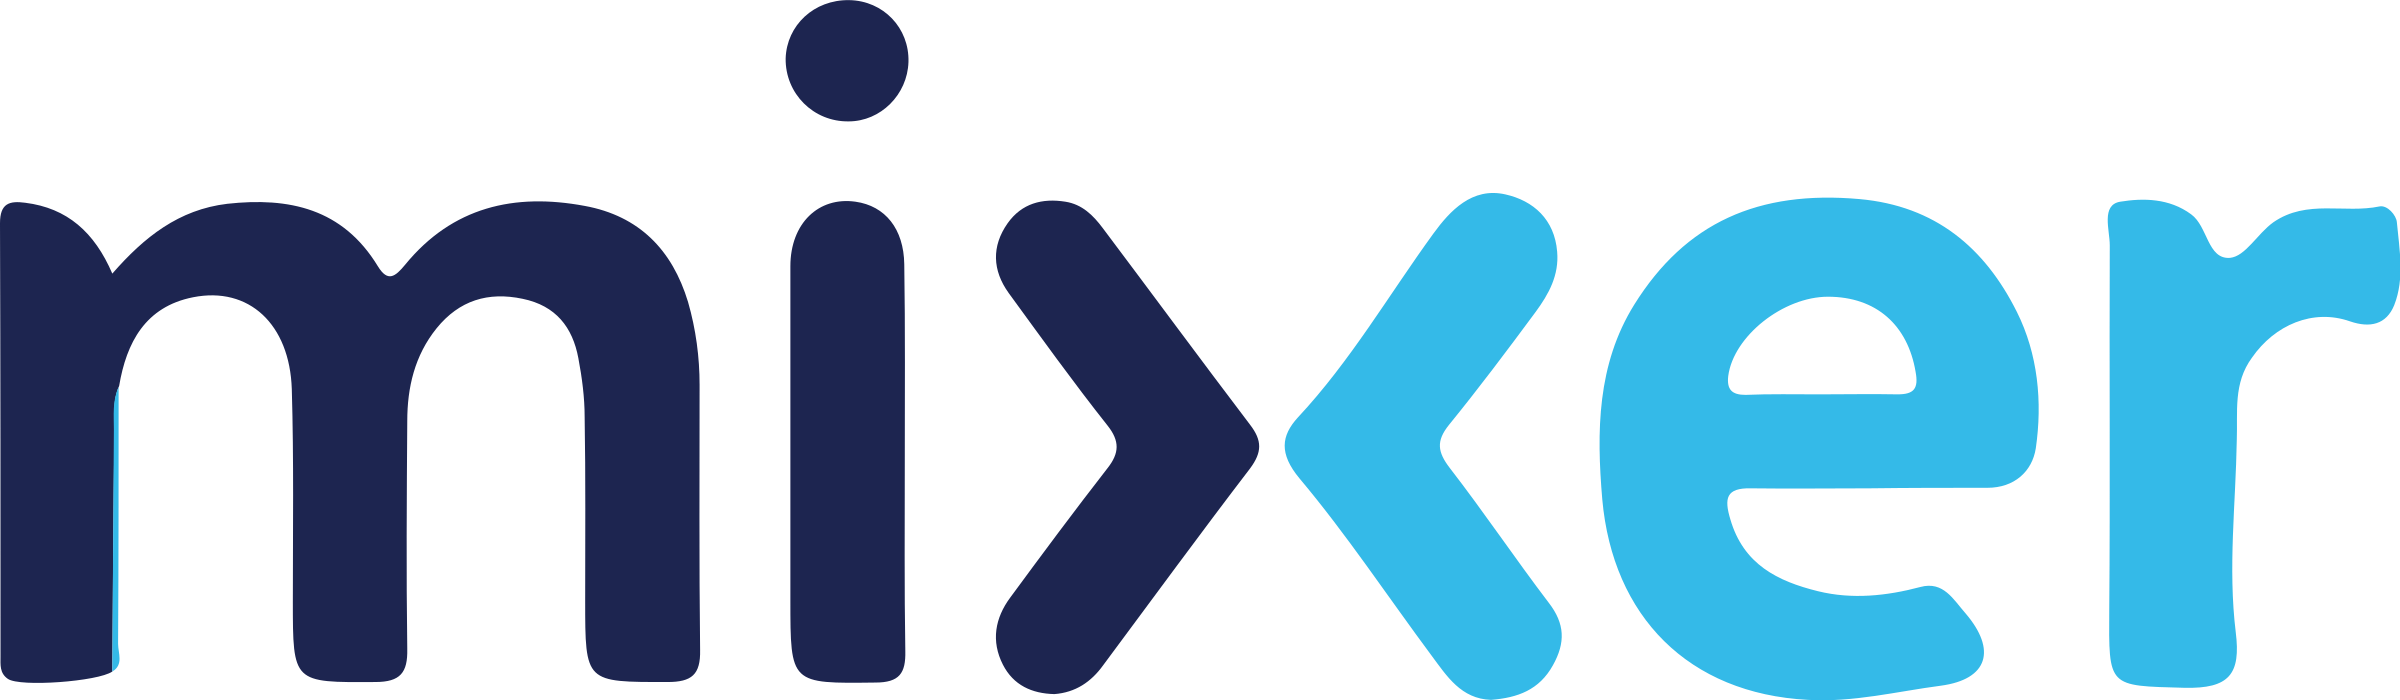 mixer-logo-png-transparent